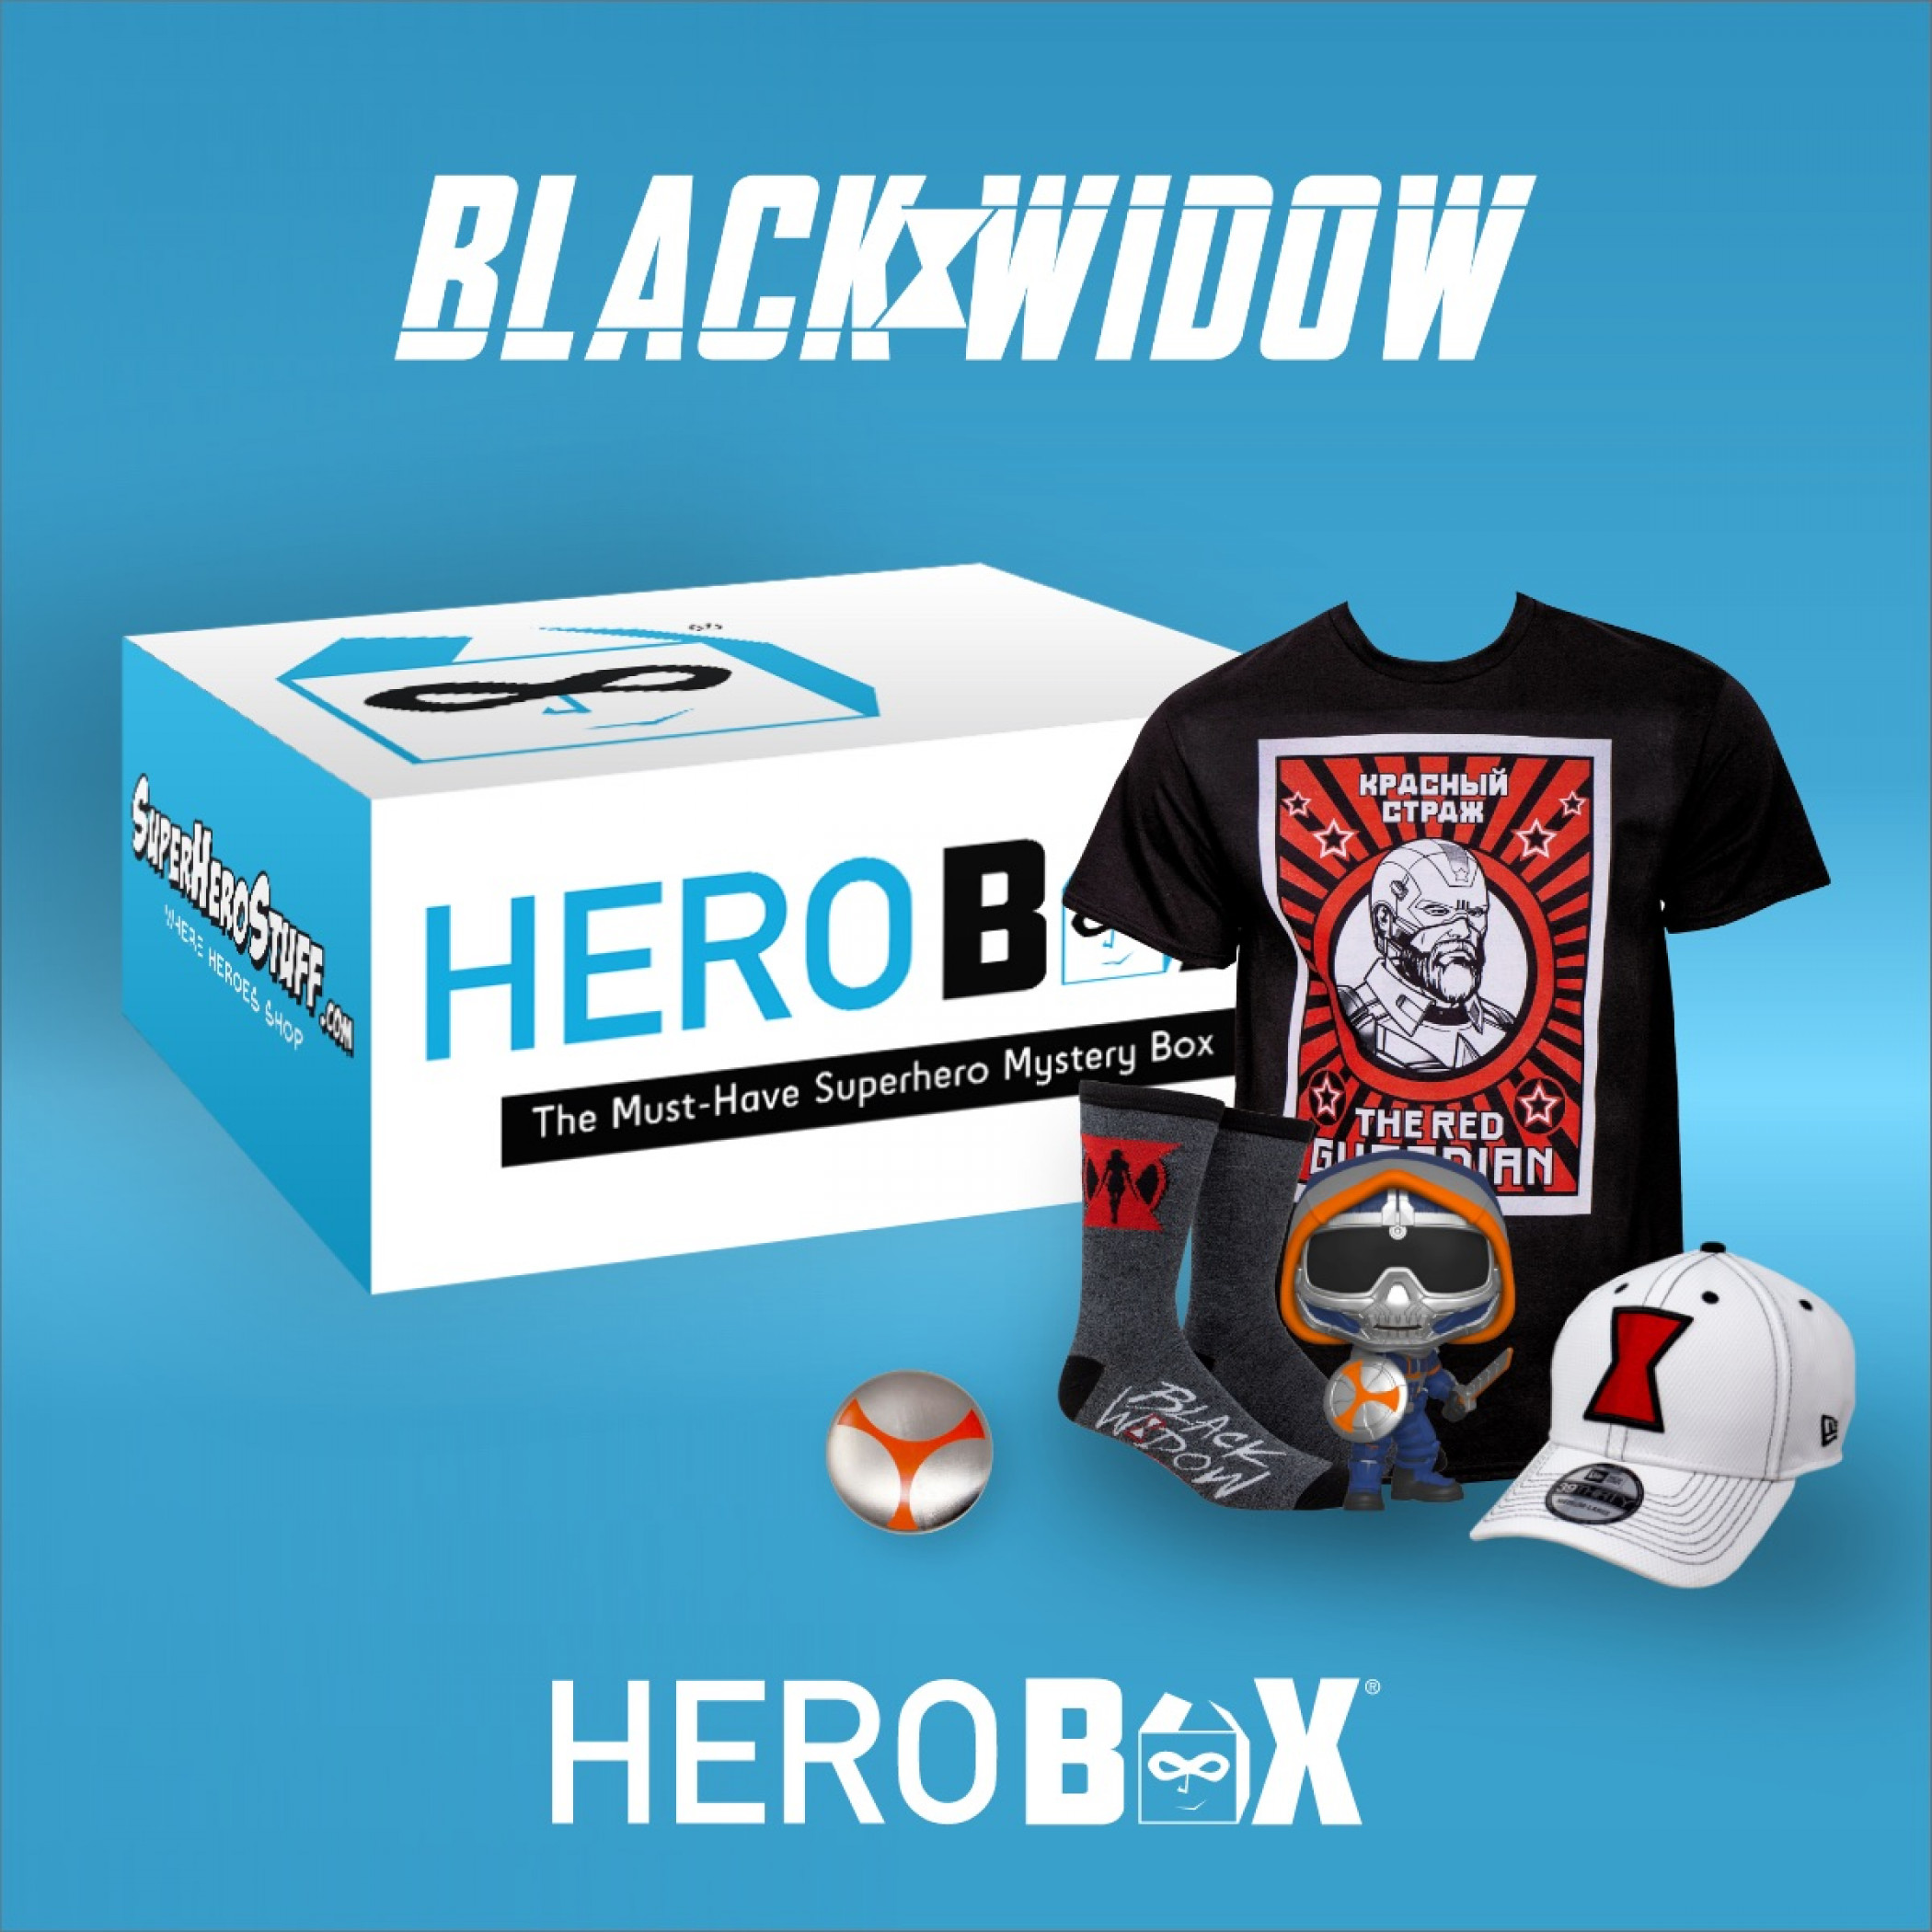 Black Widow Premium HeroBox